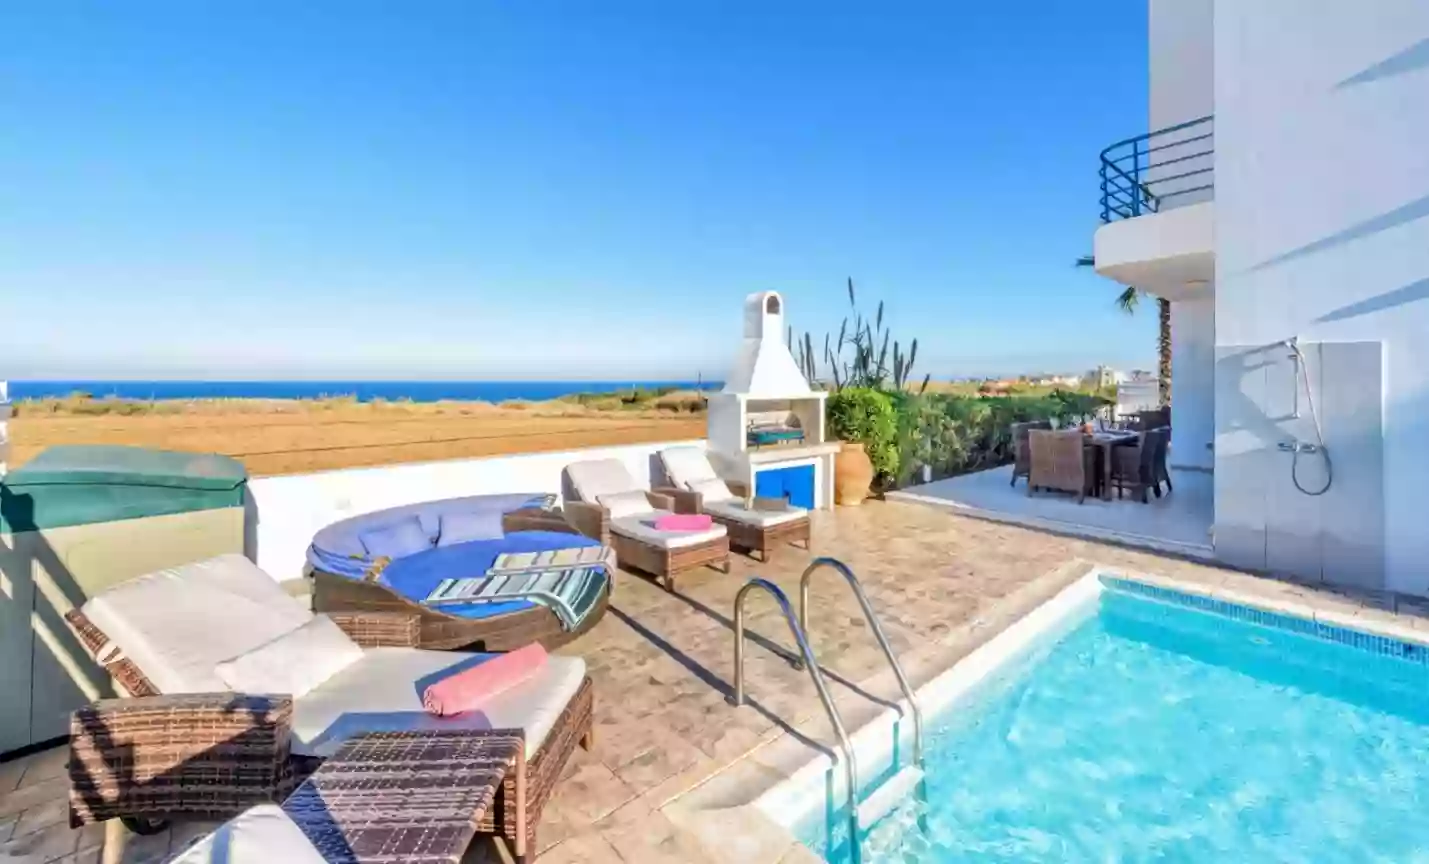 Sky, sea, sun! Stunning 4-bedroom villa in the suburbs of Cyprus